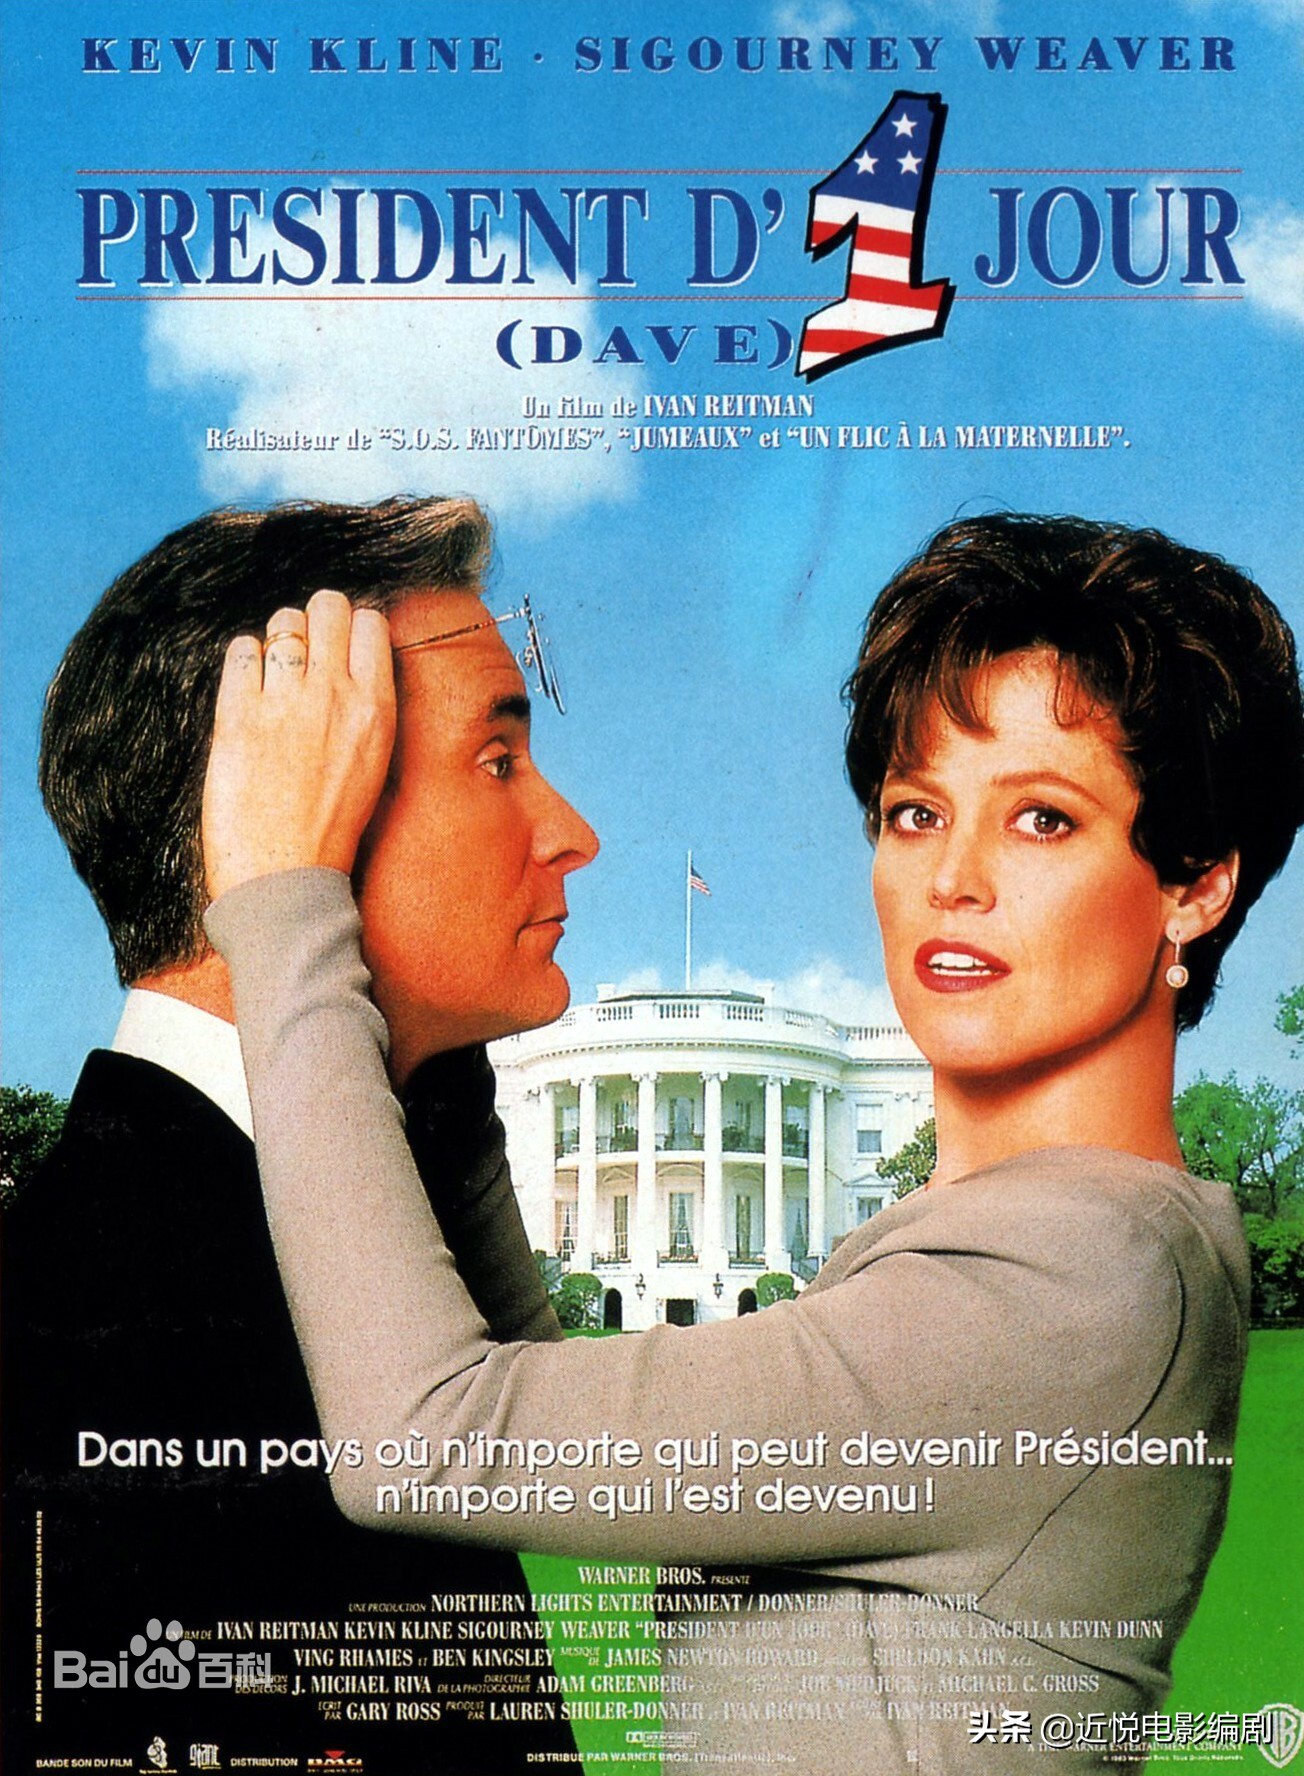 《雾水总统》——轻松愉快、制作成熟的美国商业喜剧片的典范